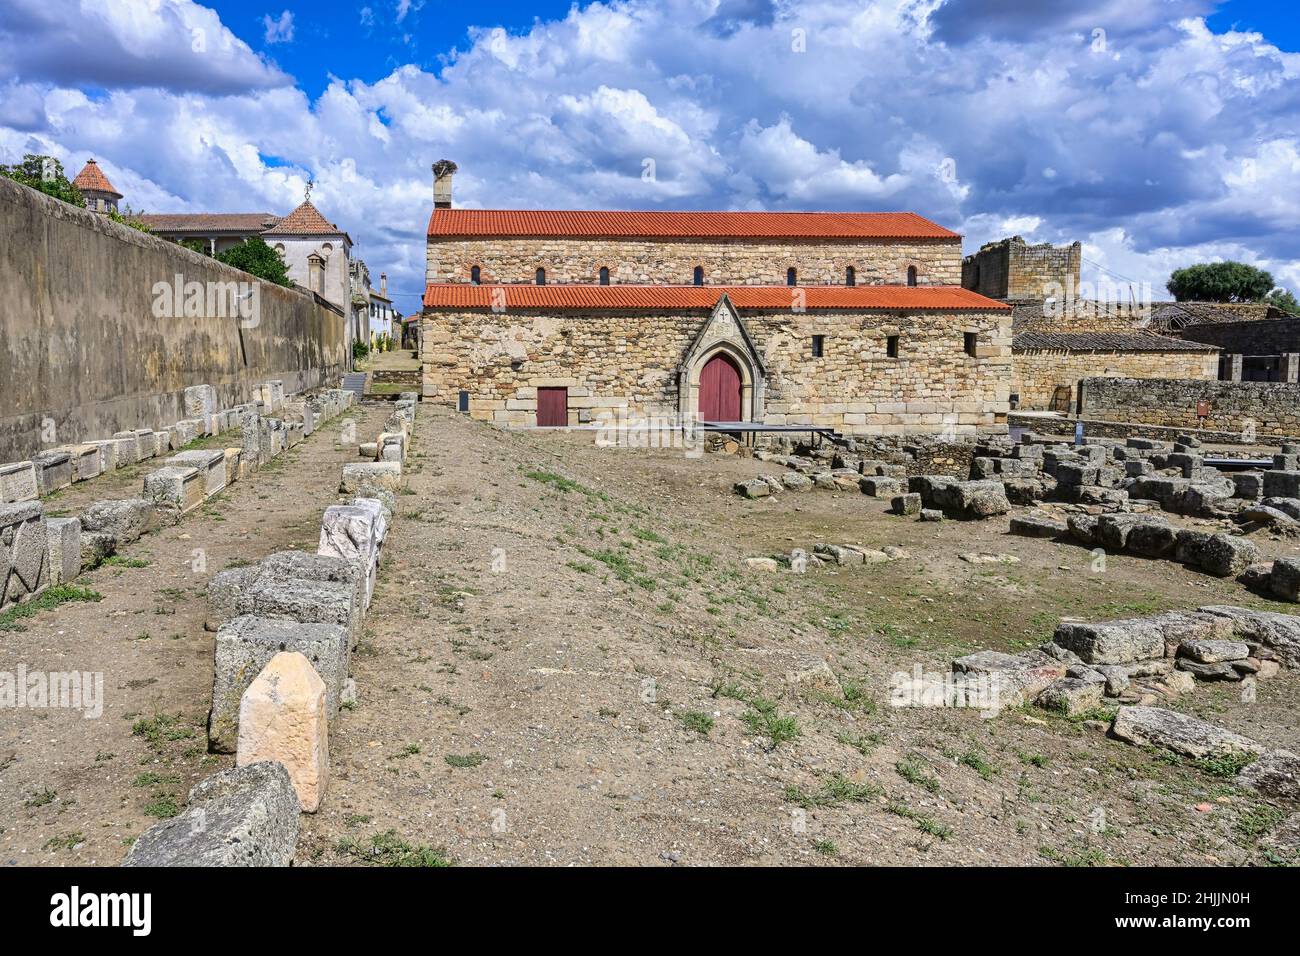 Cattedrale cattolica medievale smantellata e sito archeologico di scavo, villaggio di Idanha-a-Velha, Serra da Estrela, Beira alta, Portogallo Foto Stock